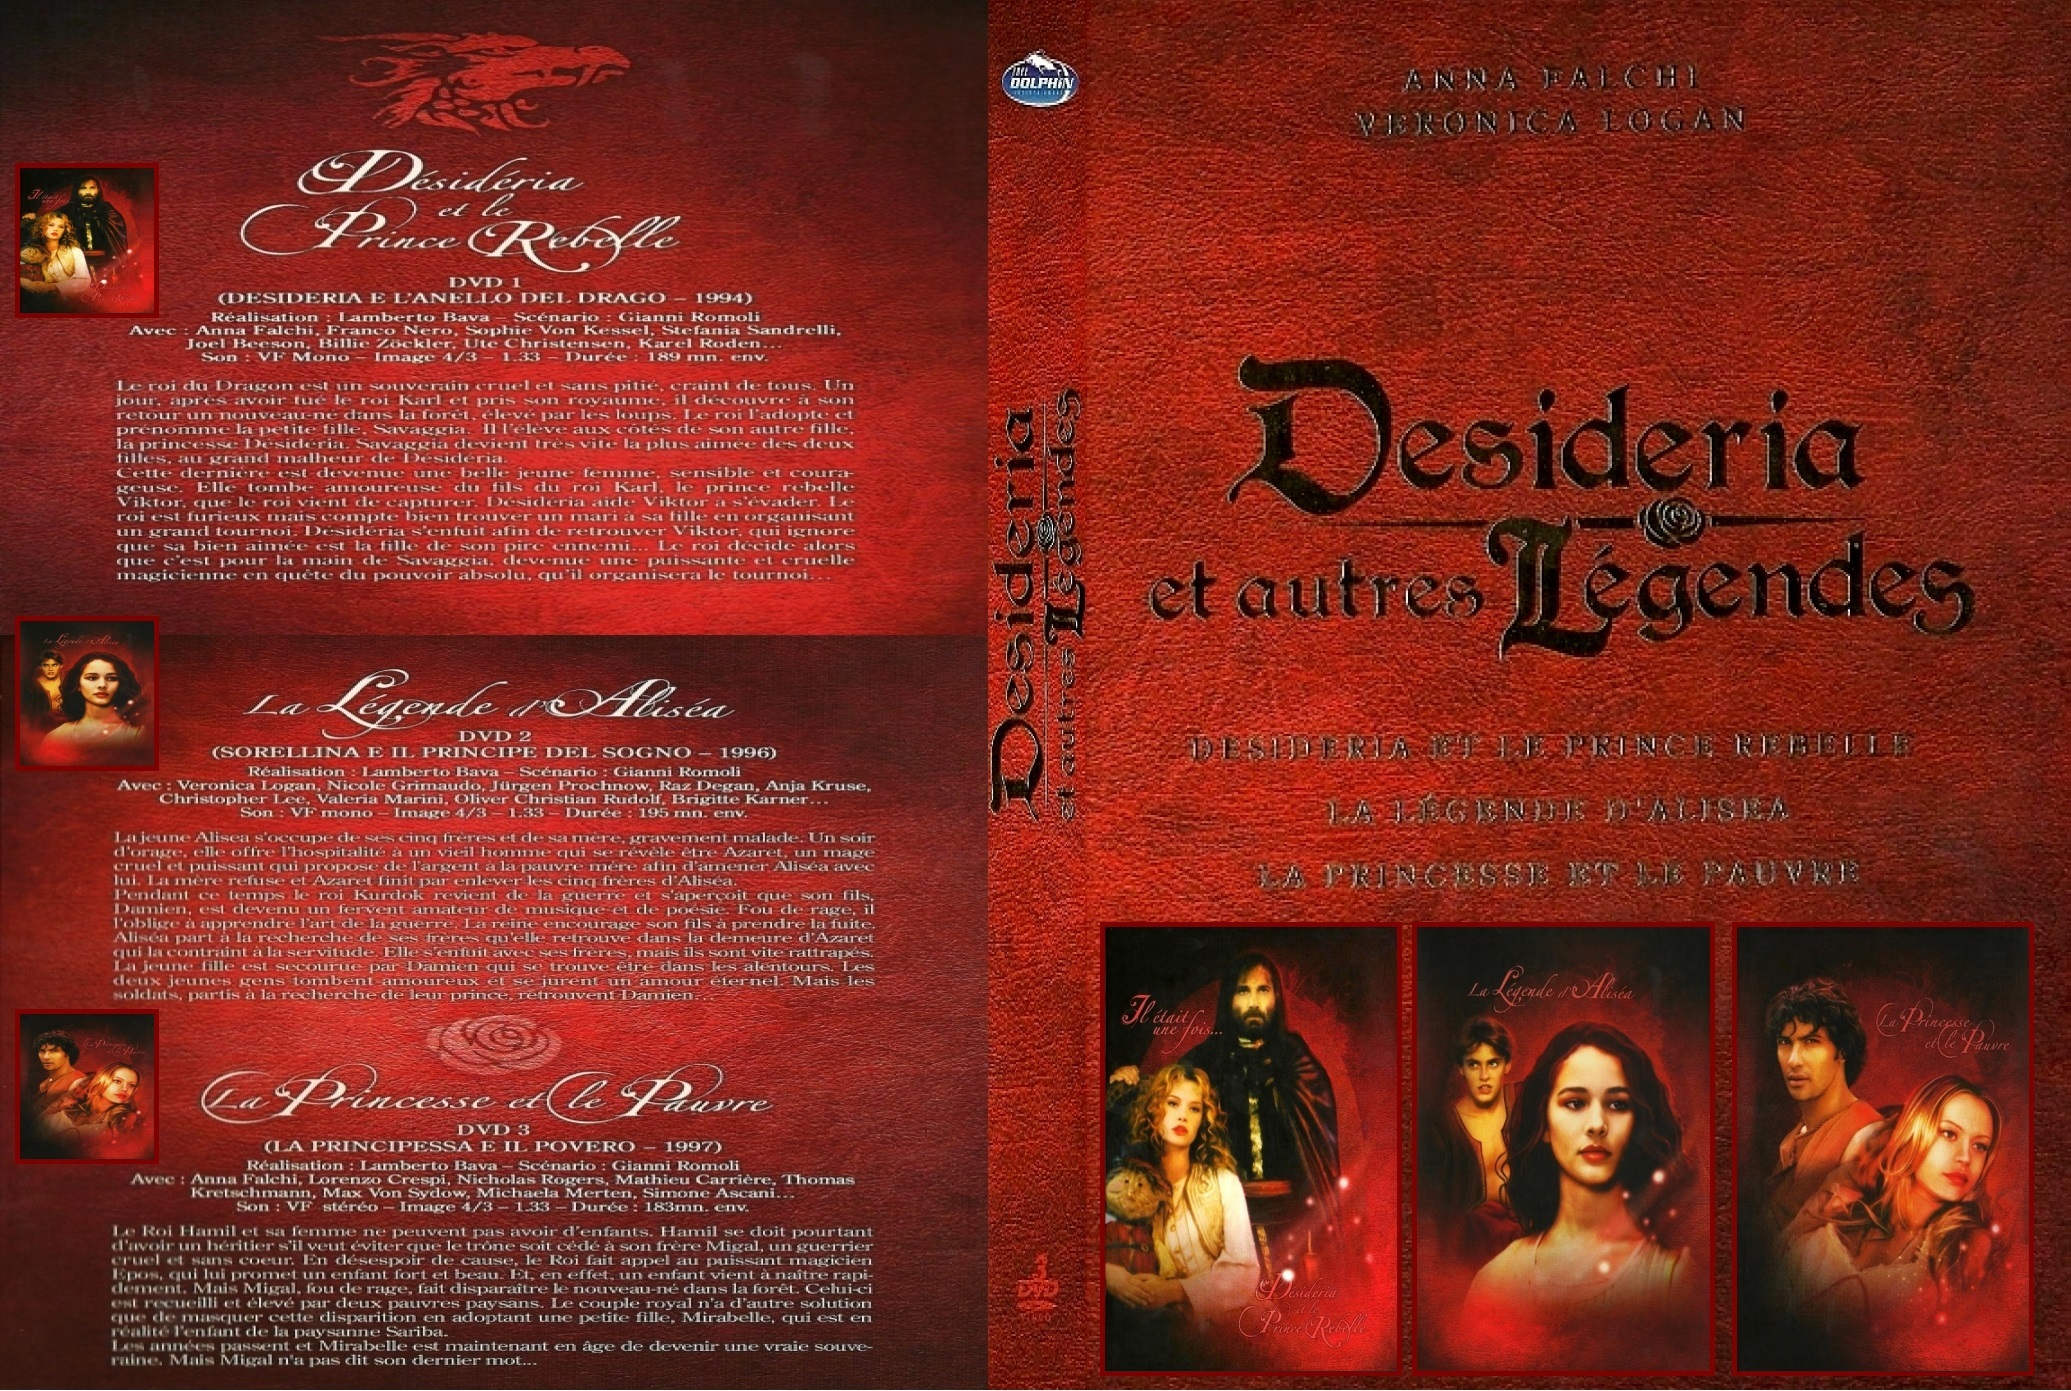 Jaquette DVD Desideria et autres legendes v2 